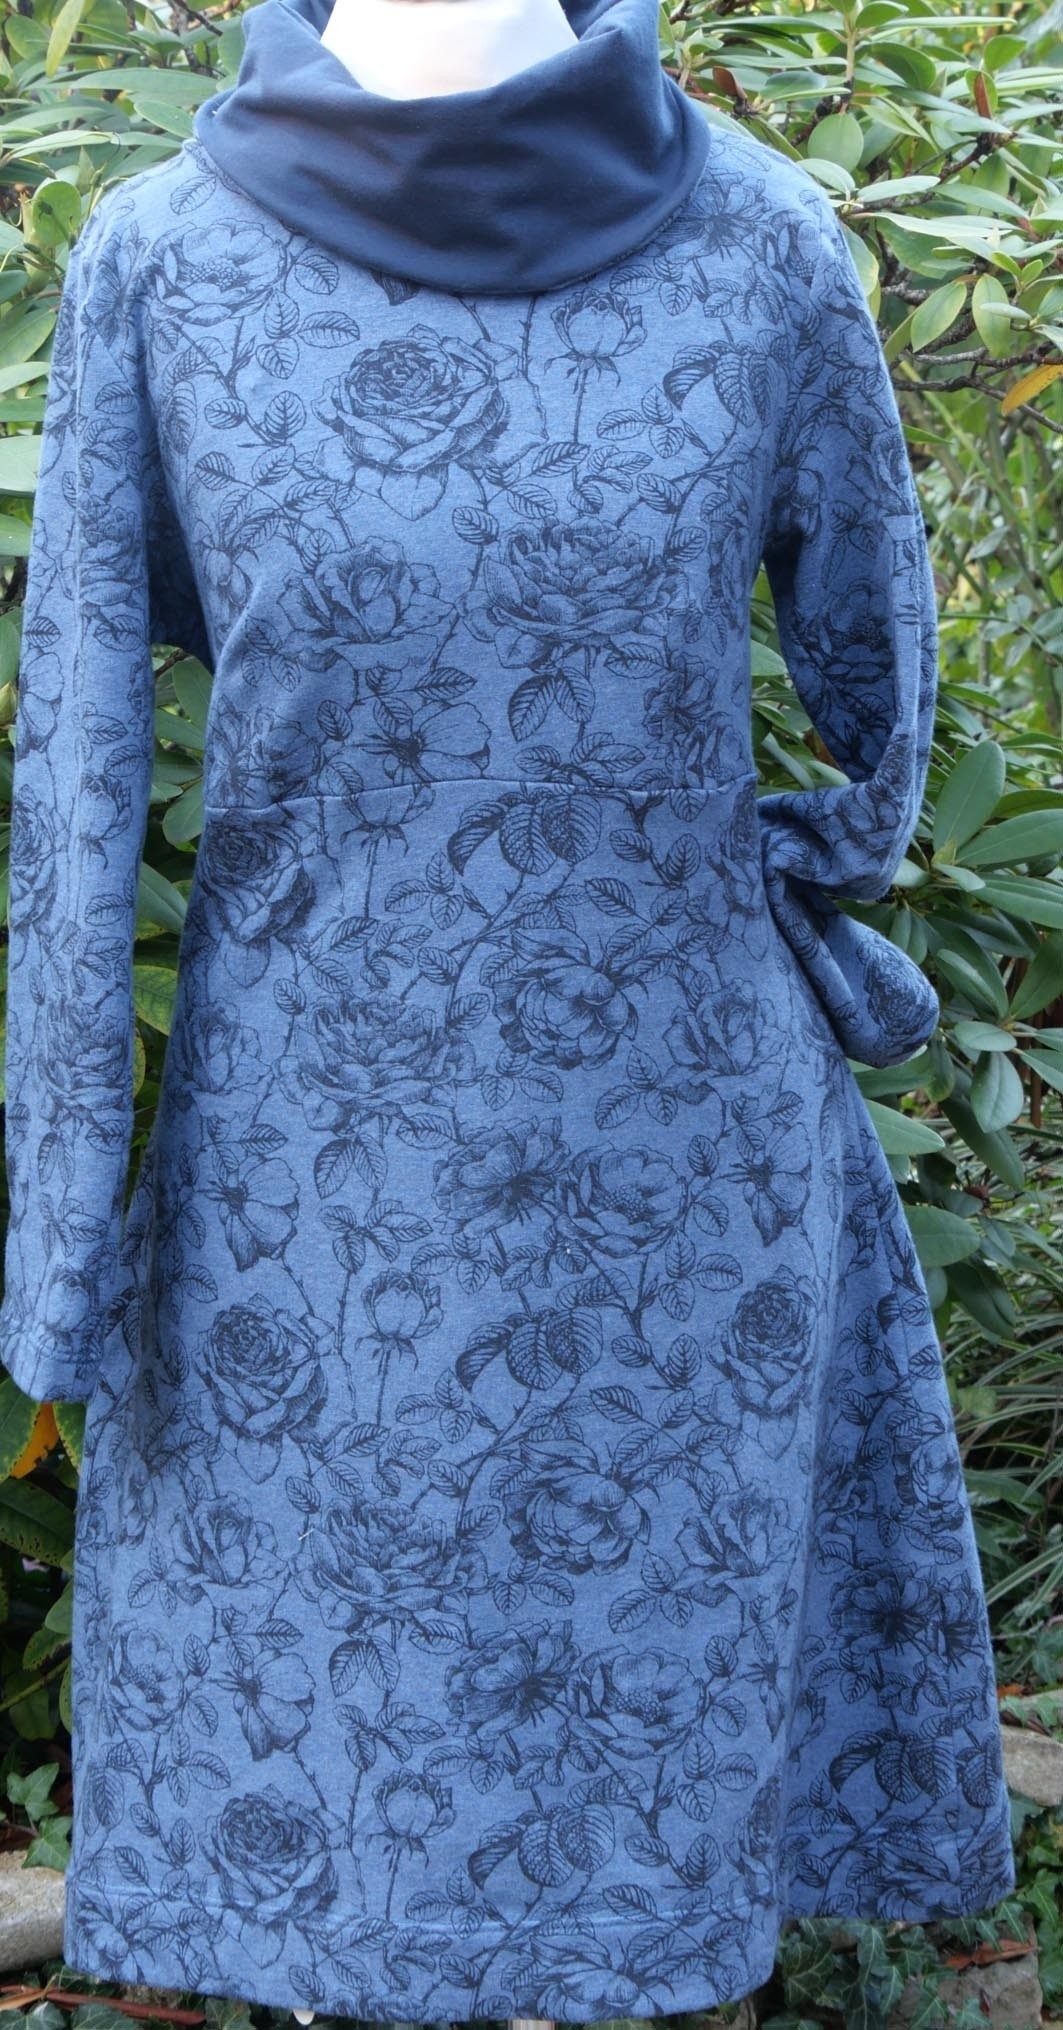 Nähpaket Kuschelkleid by AnniNanni aus Sweatshirt-Stoff " Mareike" in 2 Farben, blau oder naturweiß/grau, Gr. 34 - 52, Nähset